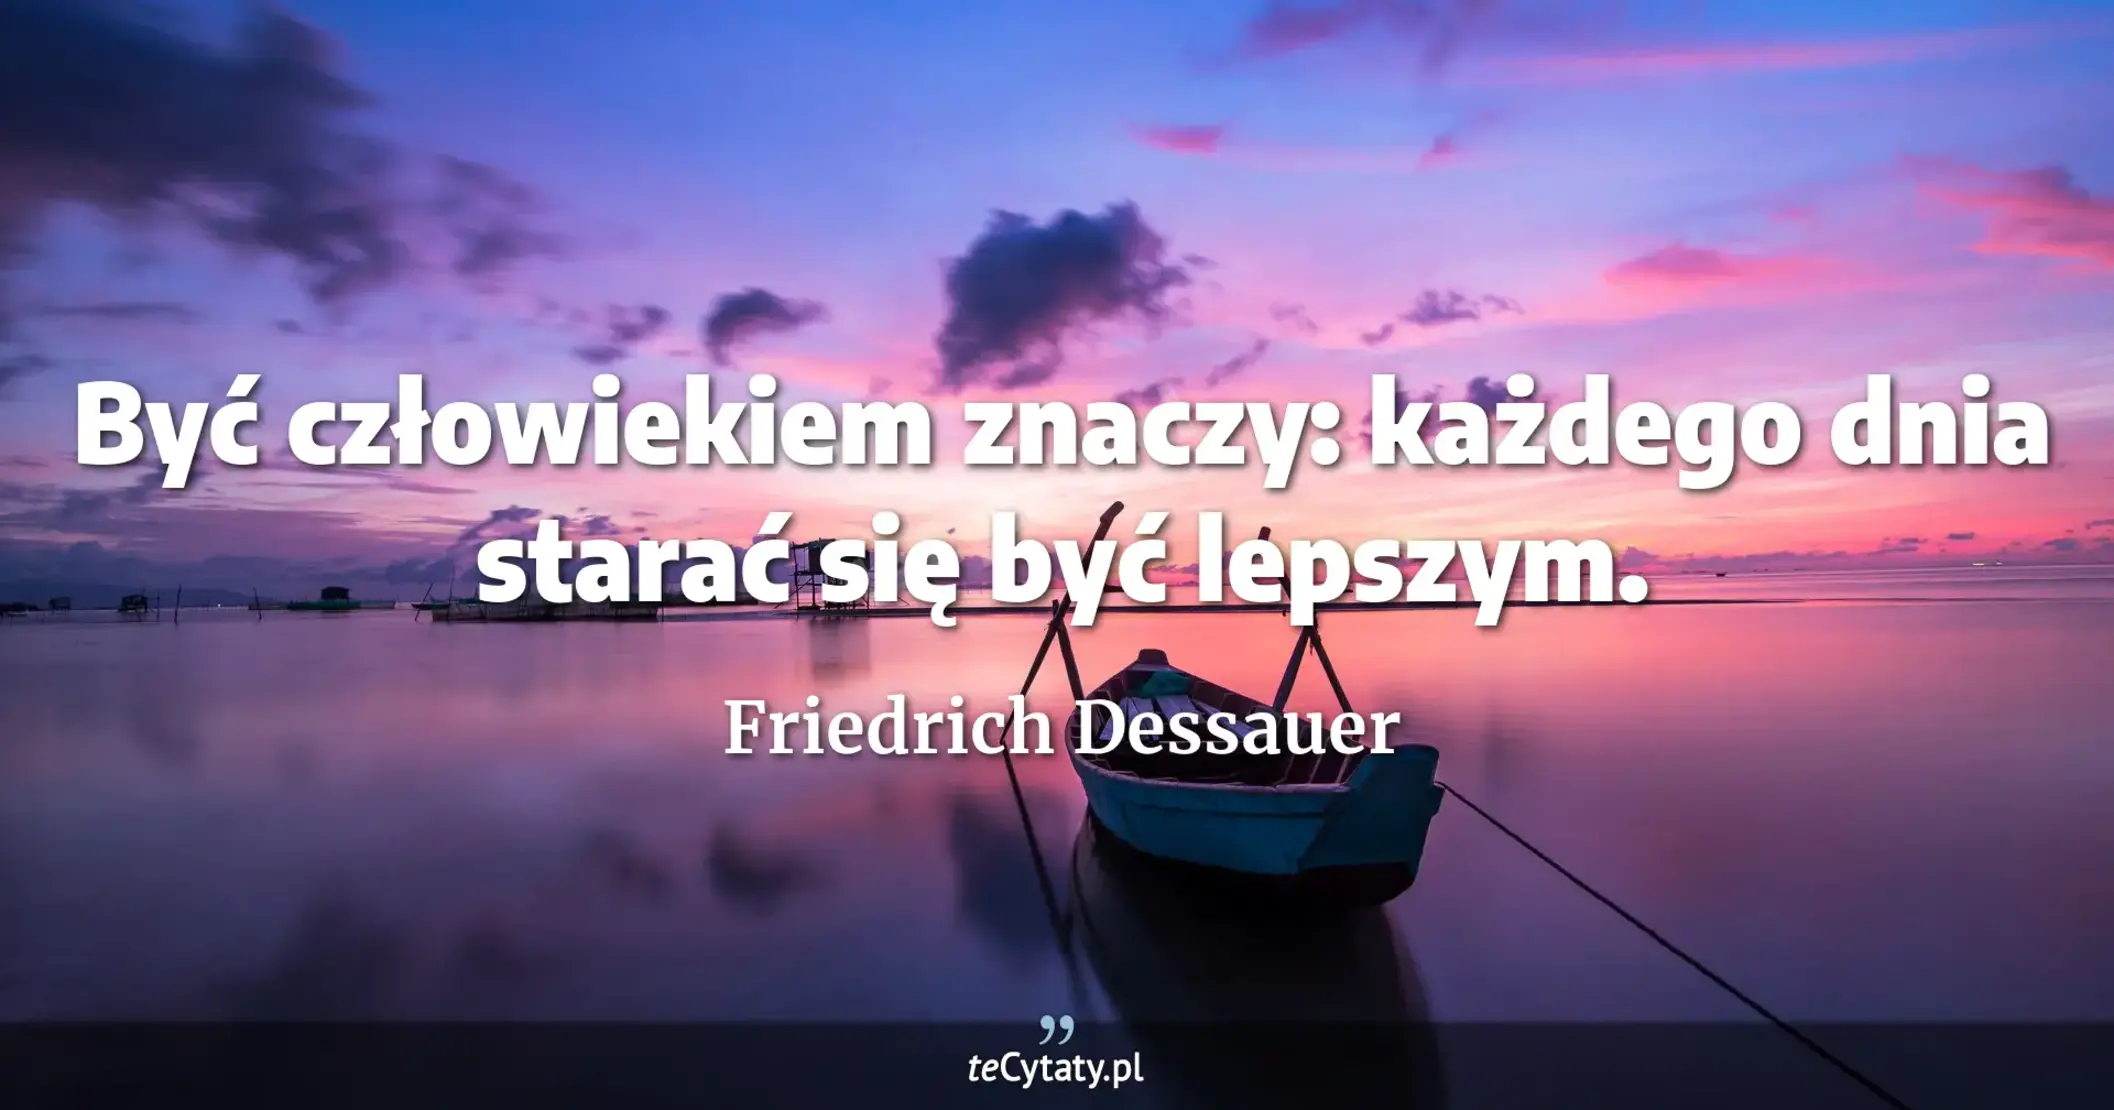 Być człowiekiem znaczy: każdego dnia starać się być lepszym. - Friedrich Dessauer